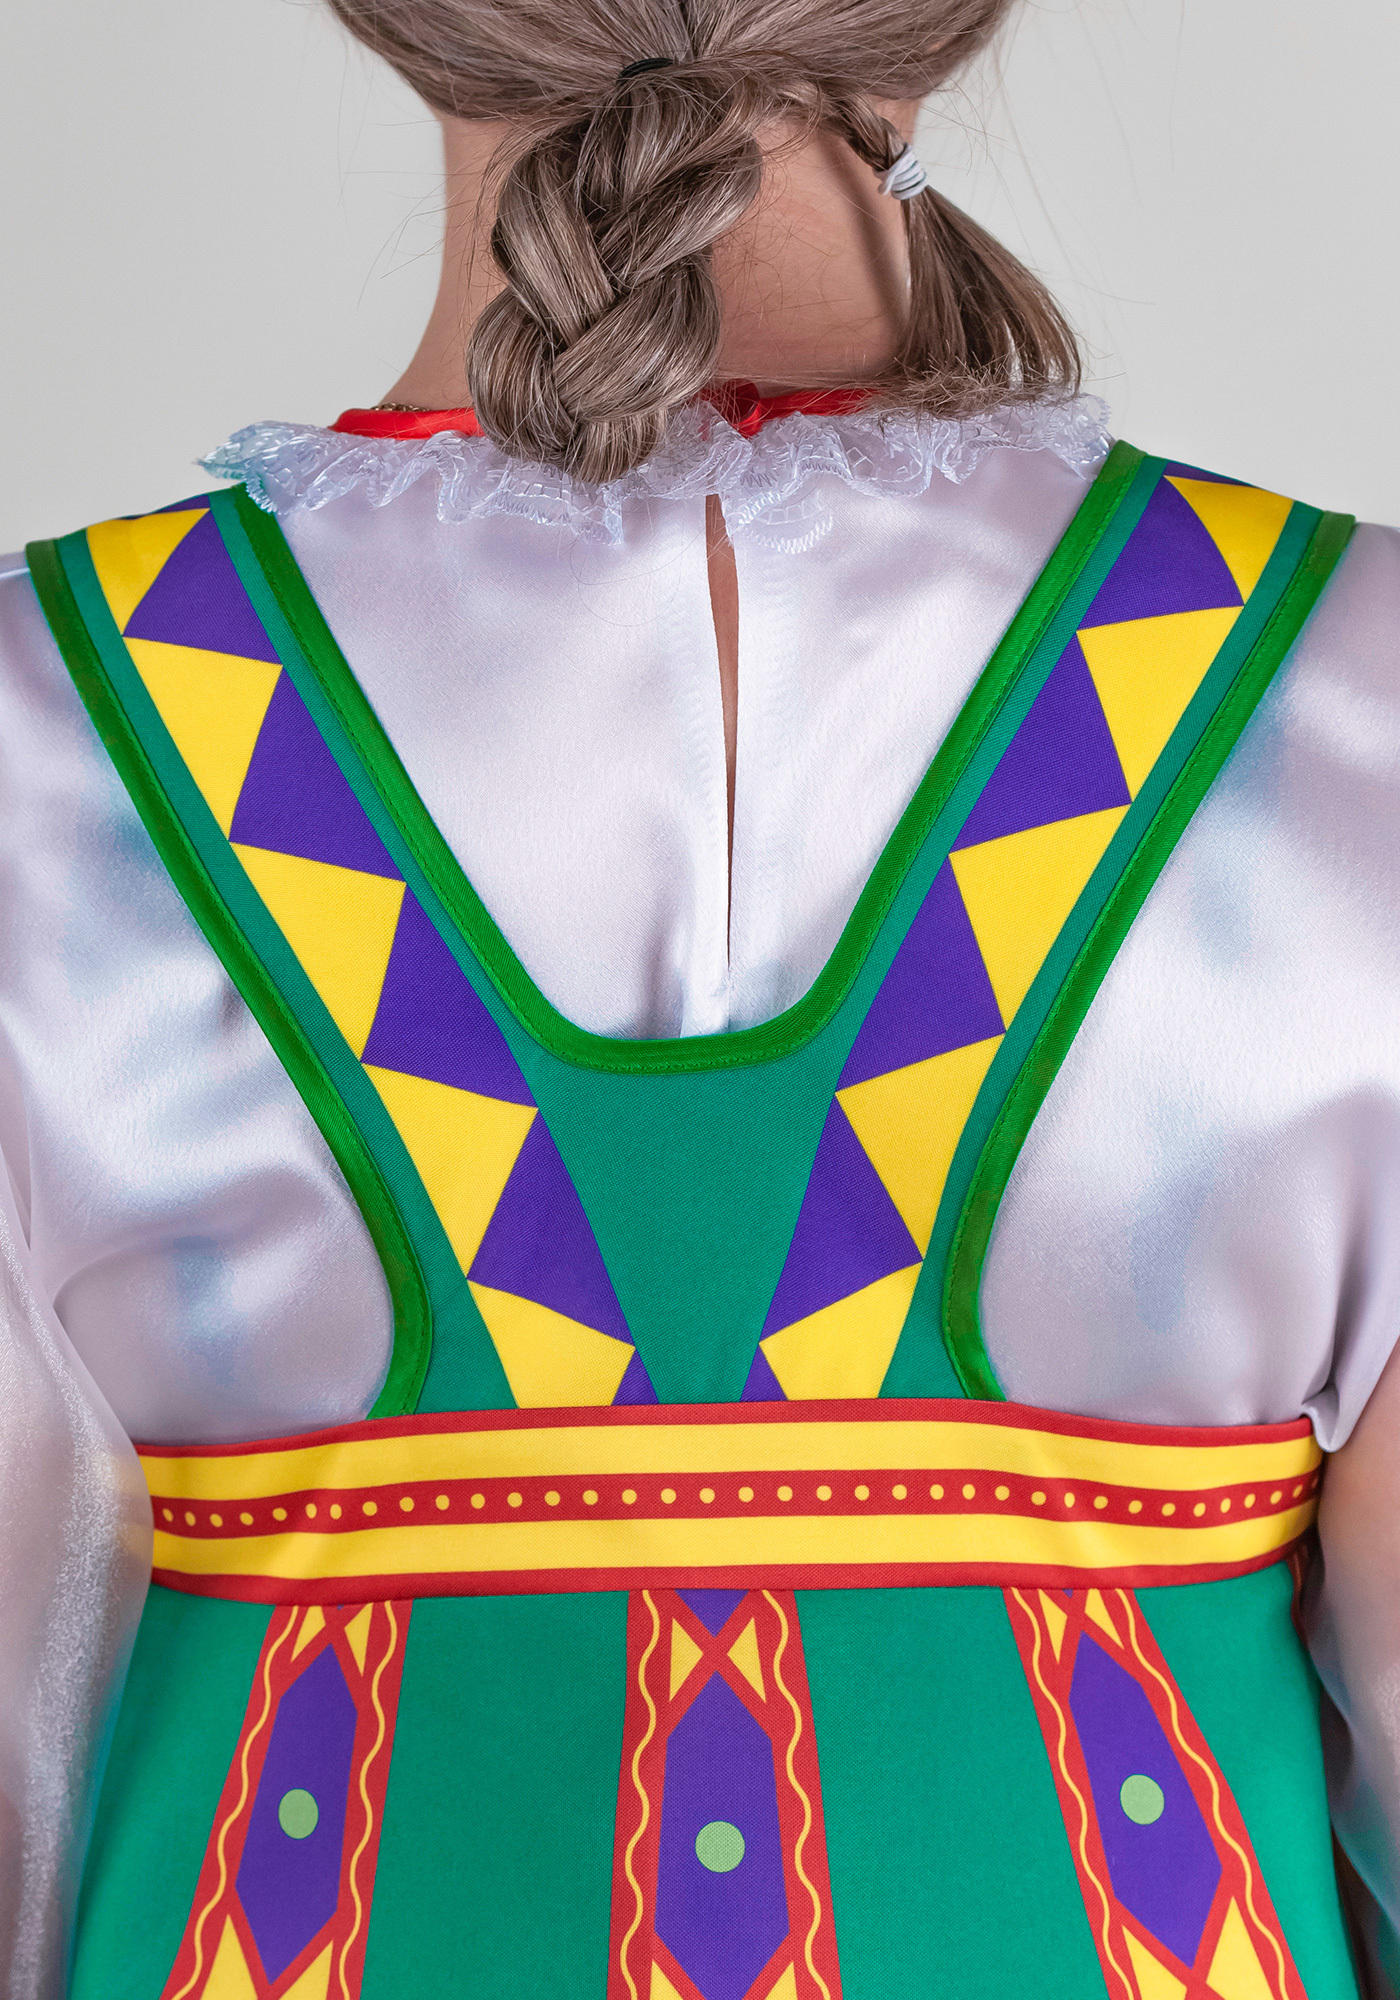 Русские-народные костюмы на масленицу - купить онлайн в luchistii-sudak.ru